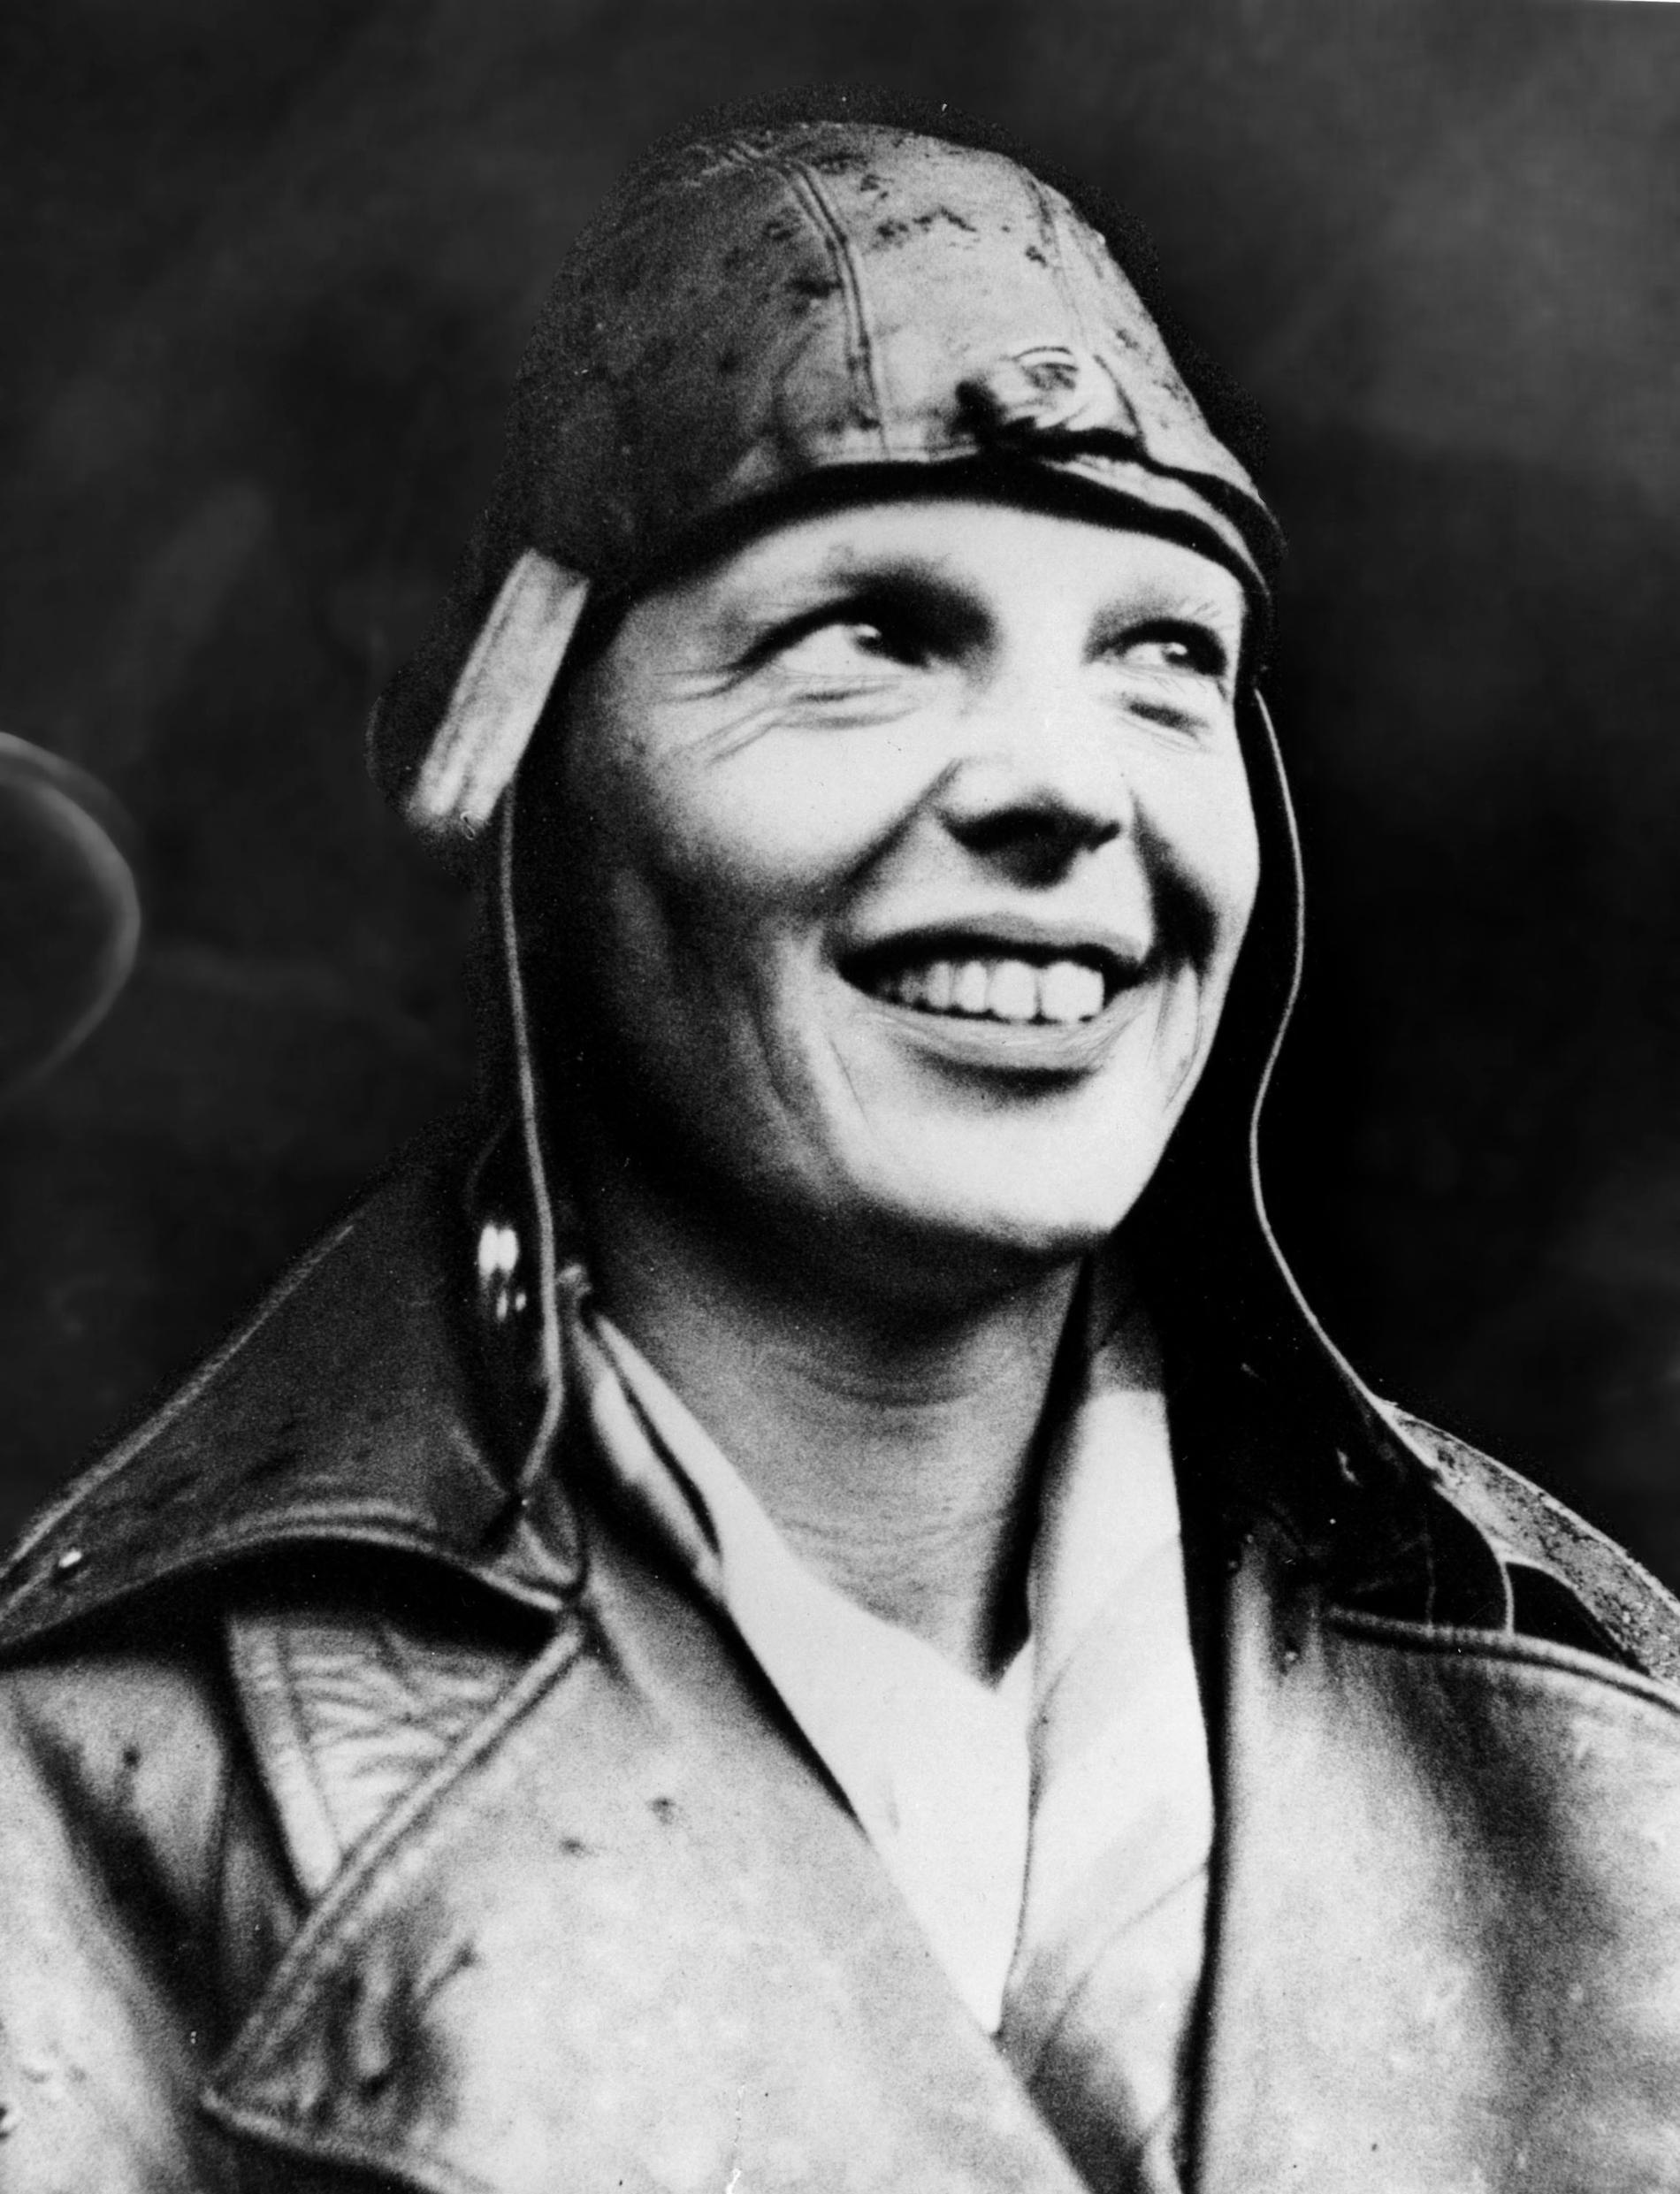 Den amerikanska flygaren Amelia Earhart ler den 22 maj 1932 när hon anländer till London, England efter att ha blivit den första kvinnan att flyga ensam över Atlanten.